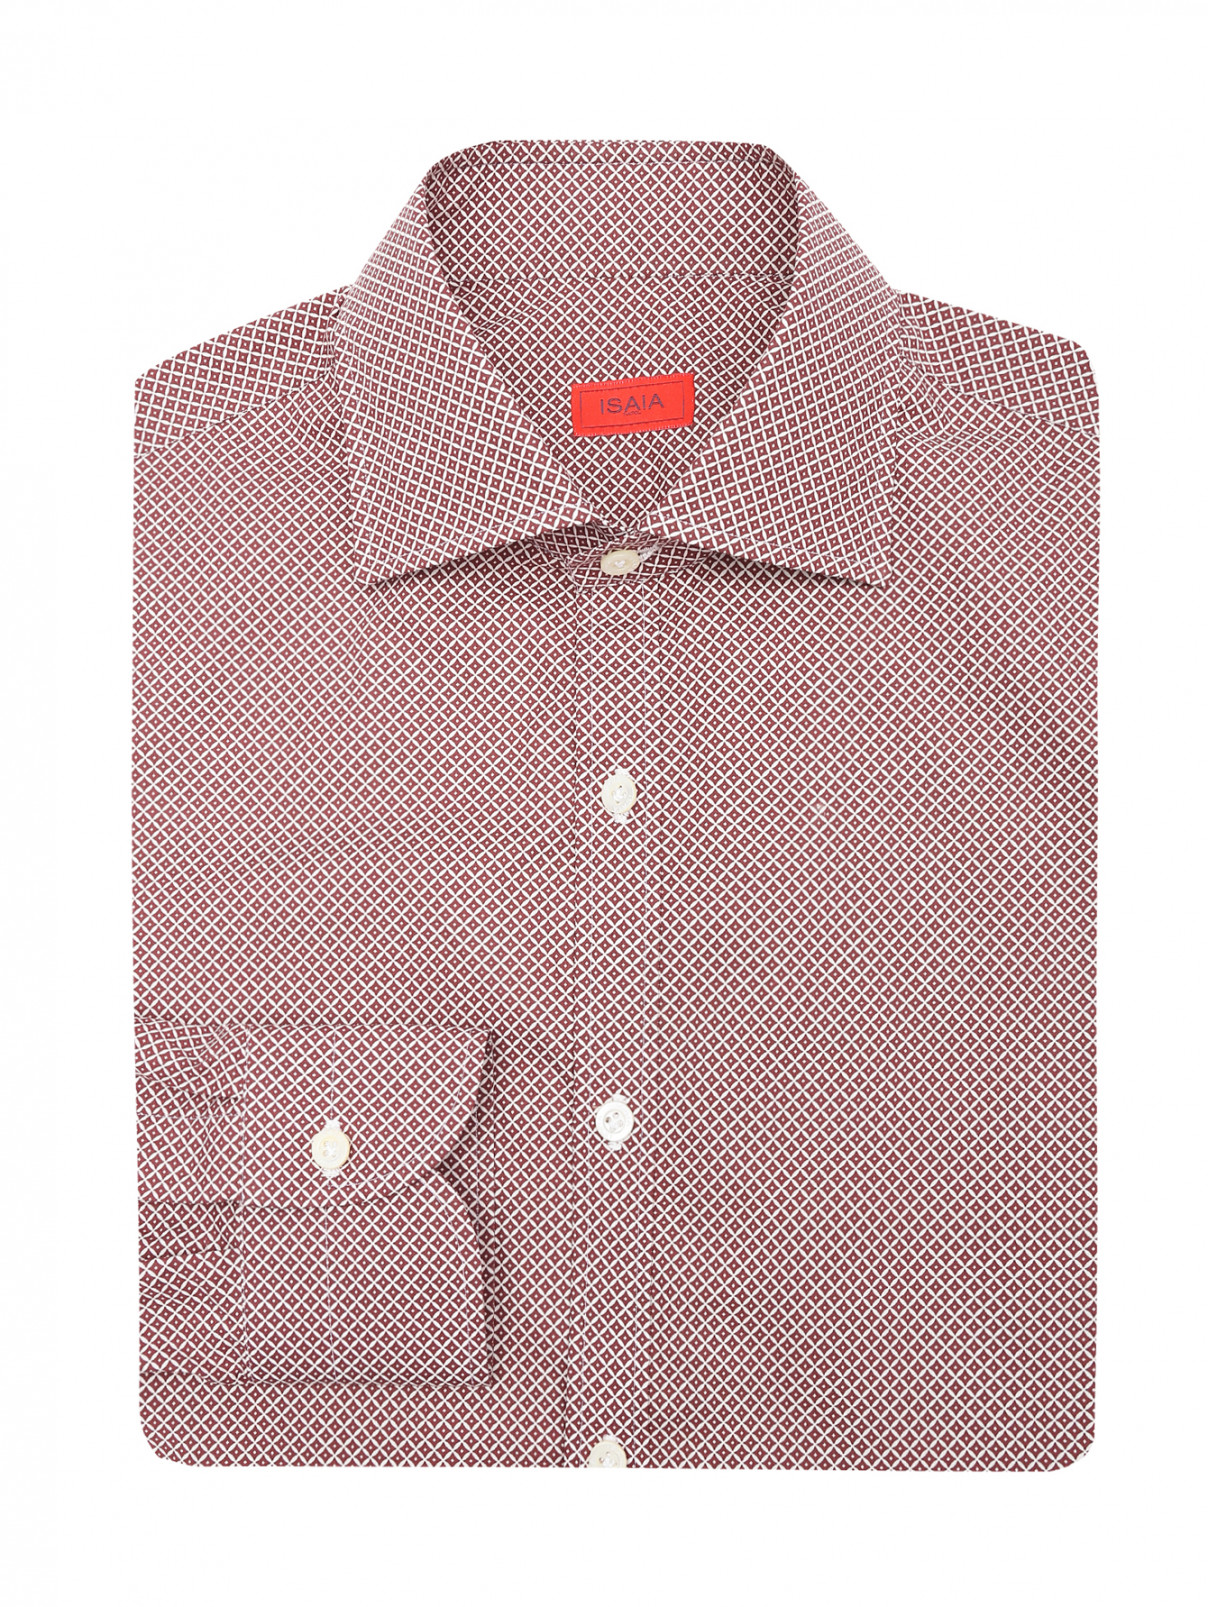 Рубашка из хлопка с узором Isaia  –  Общий вид  – Цвет:  Красный